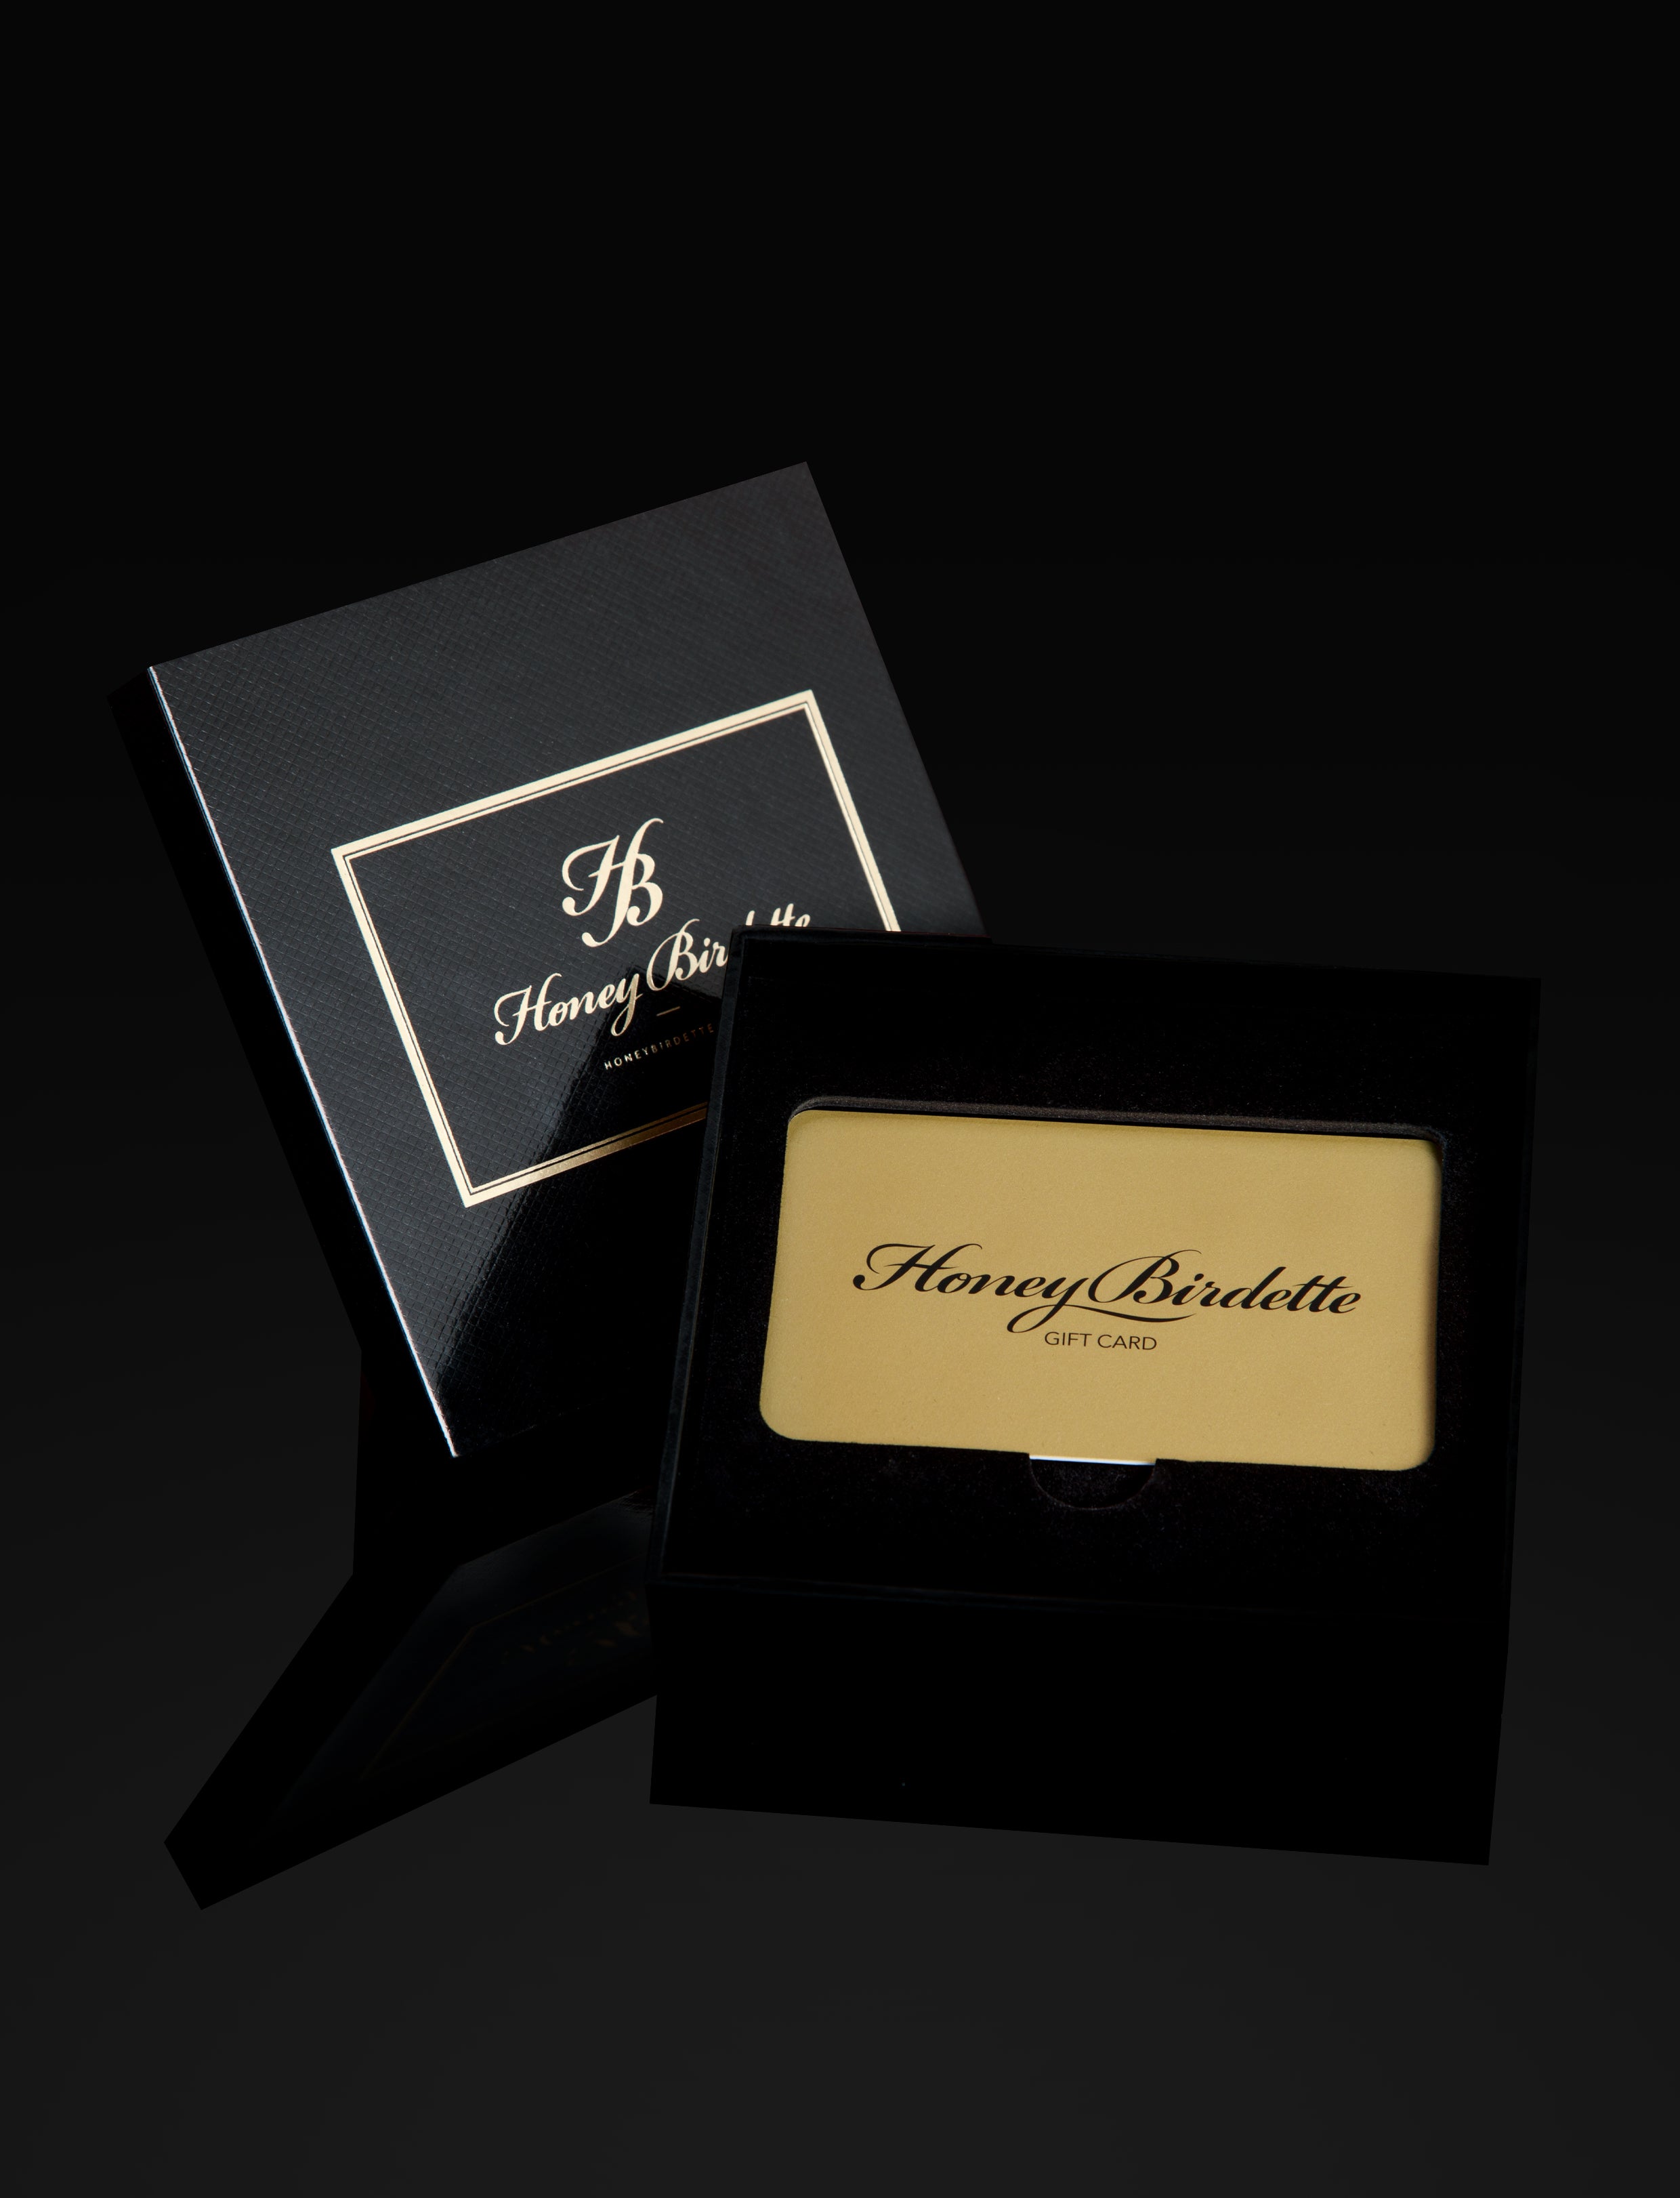 Honey Birdette Gift Card & Gift Box